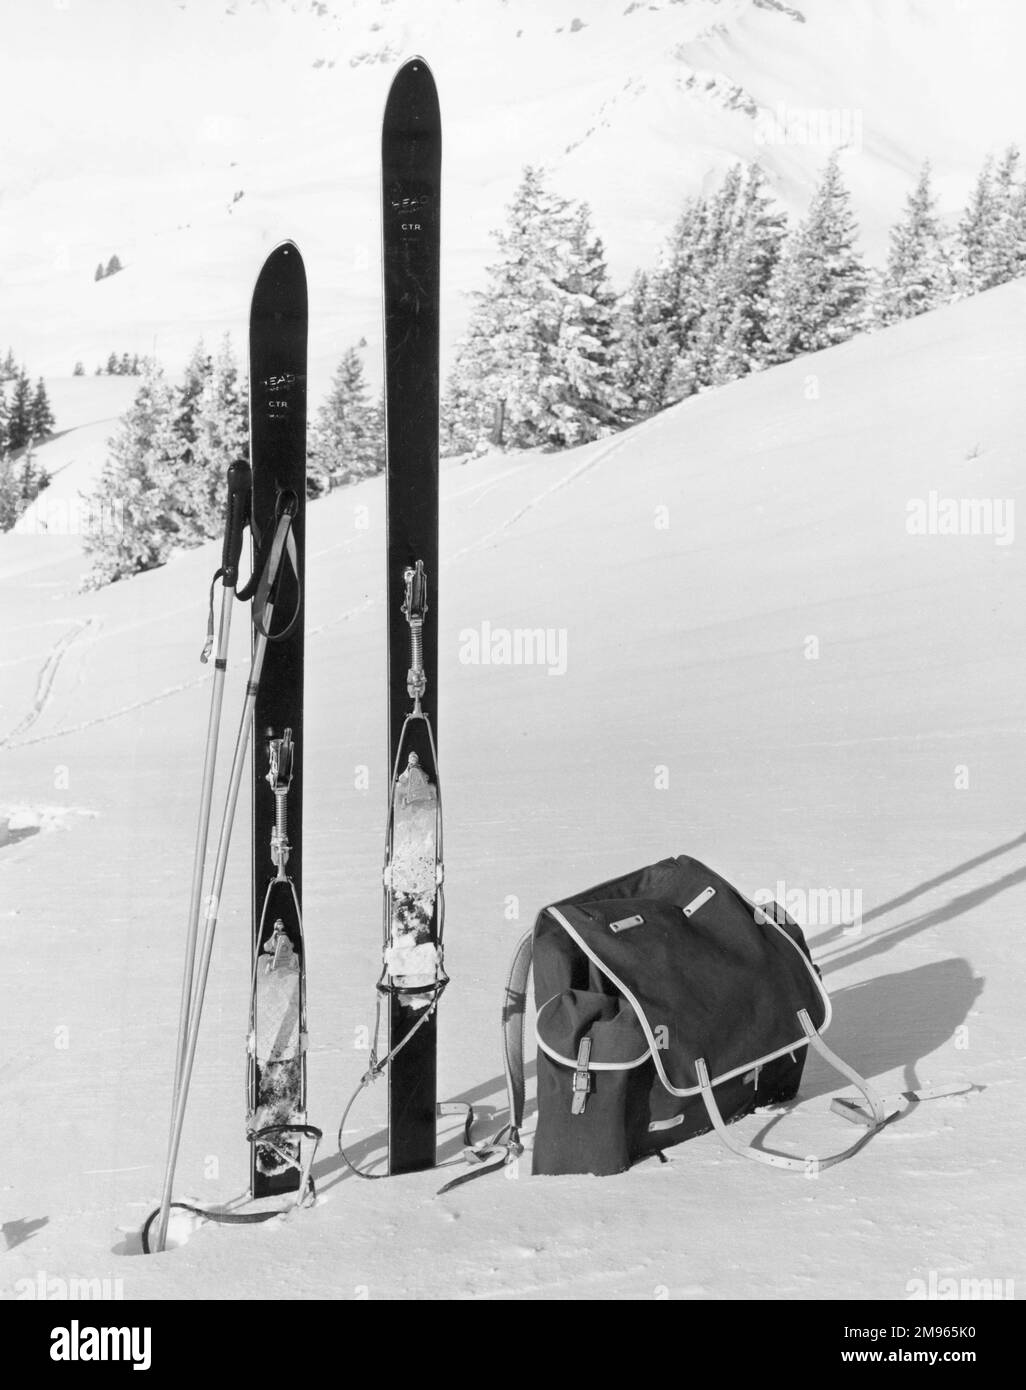 Skiing equipment. Stock Photo